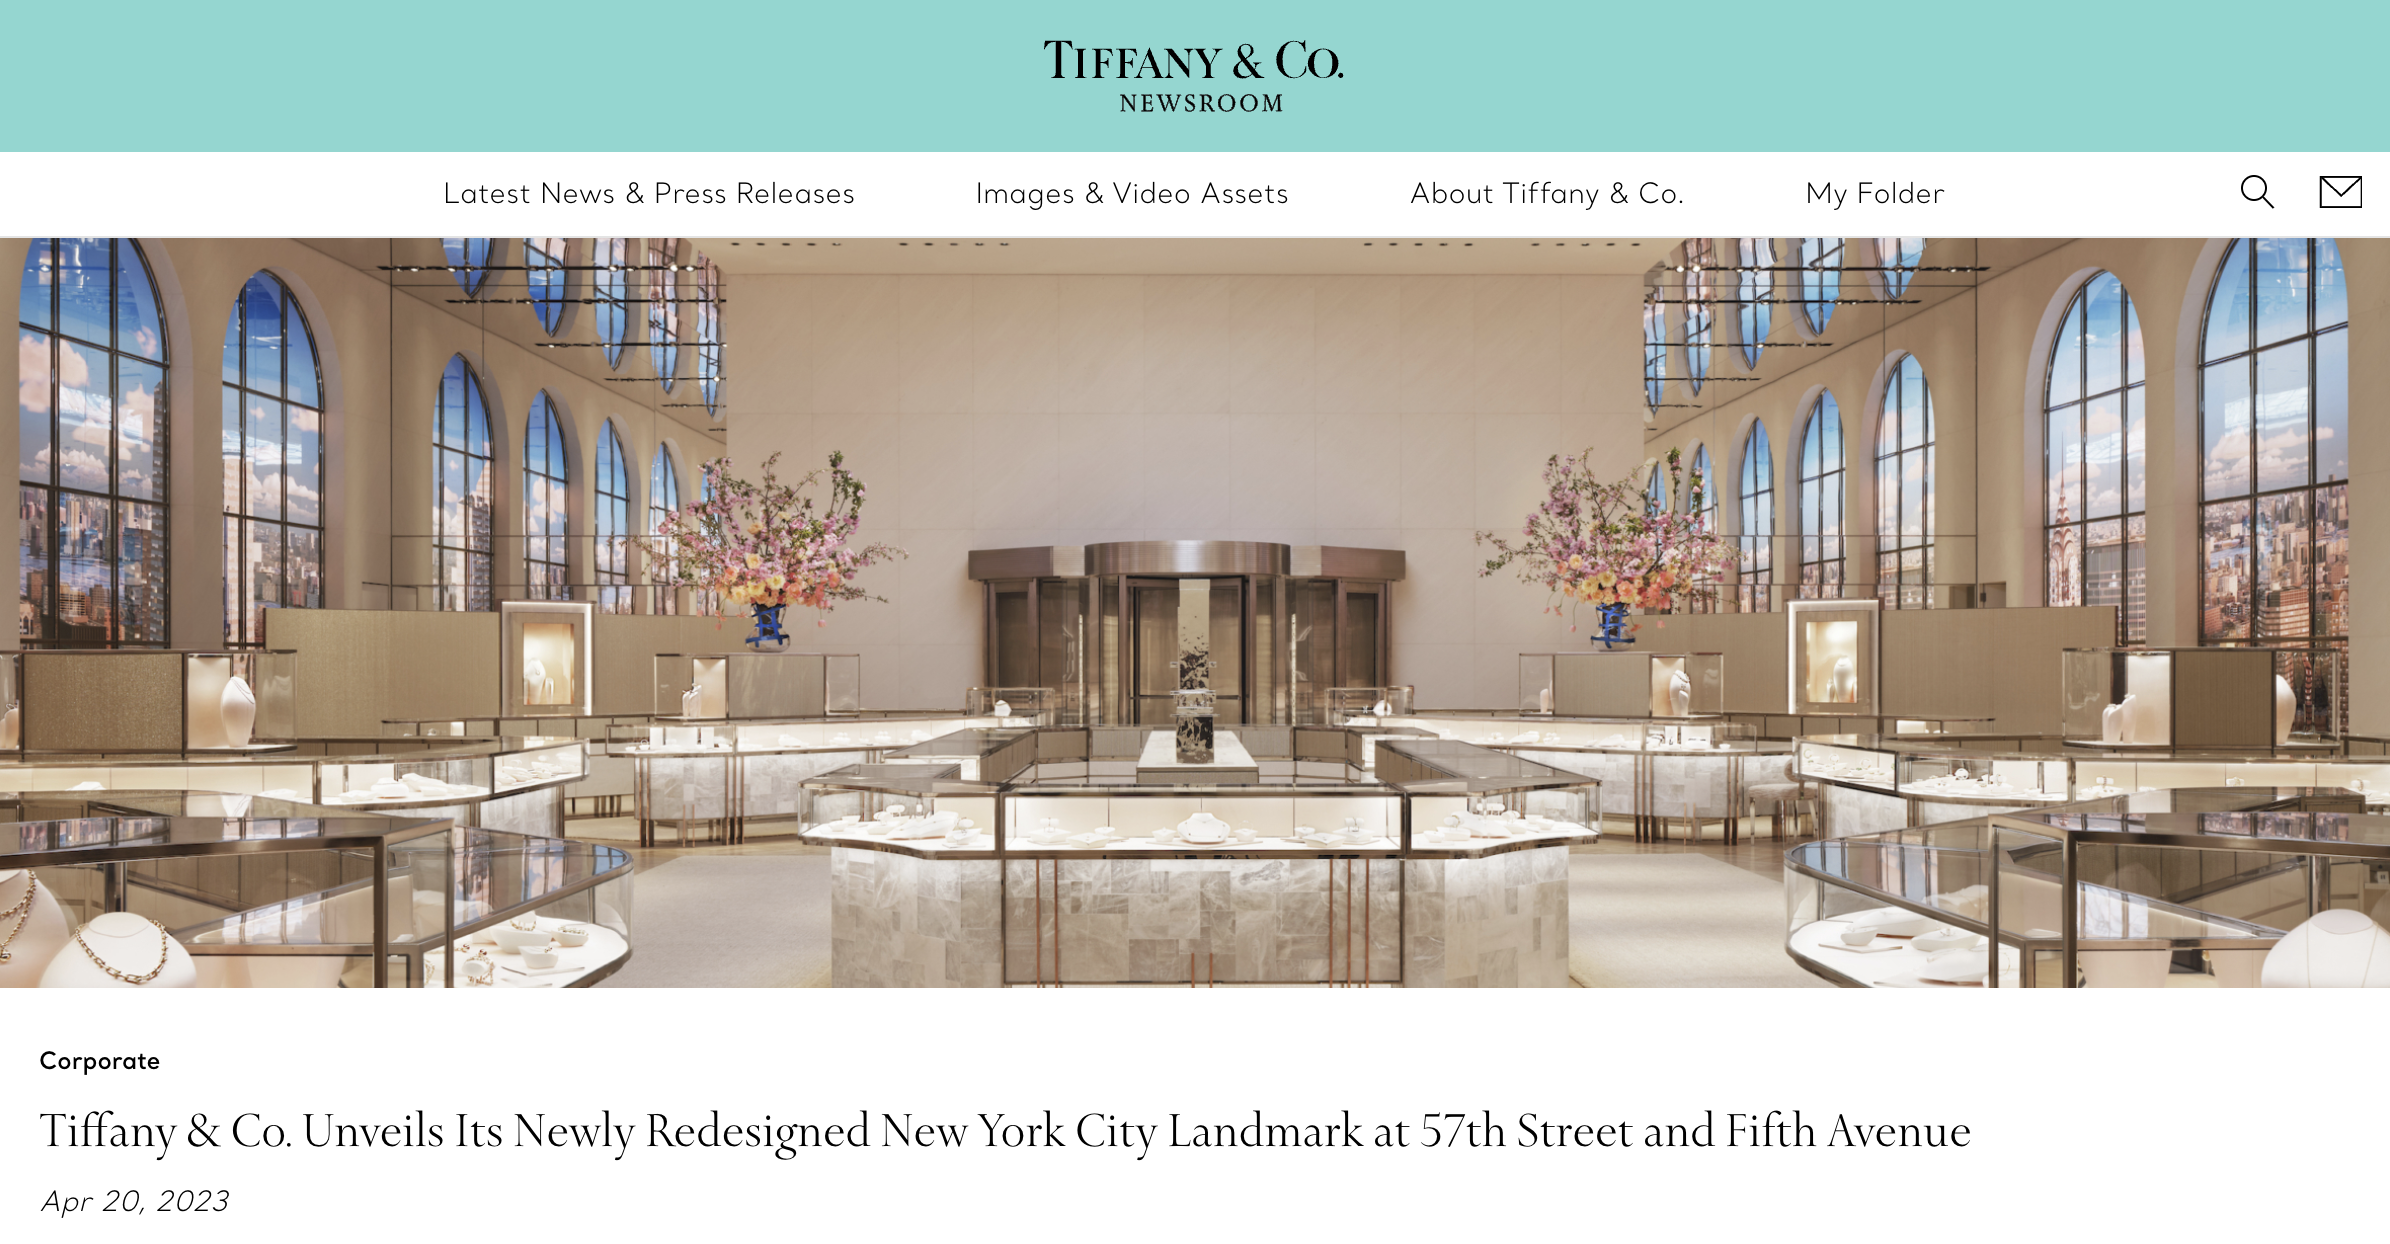 Tiffany & Co. 成为首家净零排放目标获得 SBTi 认可的奢侈珠宝品牌